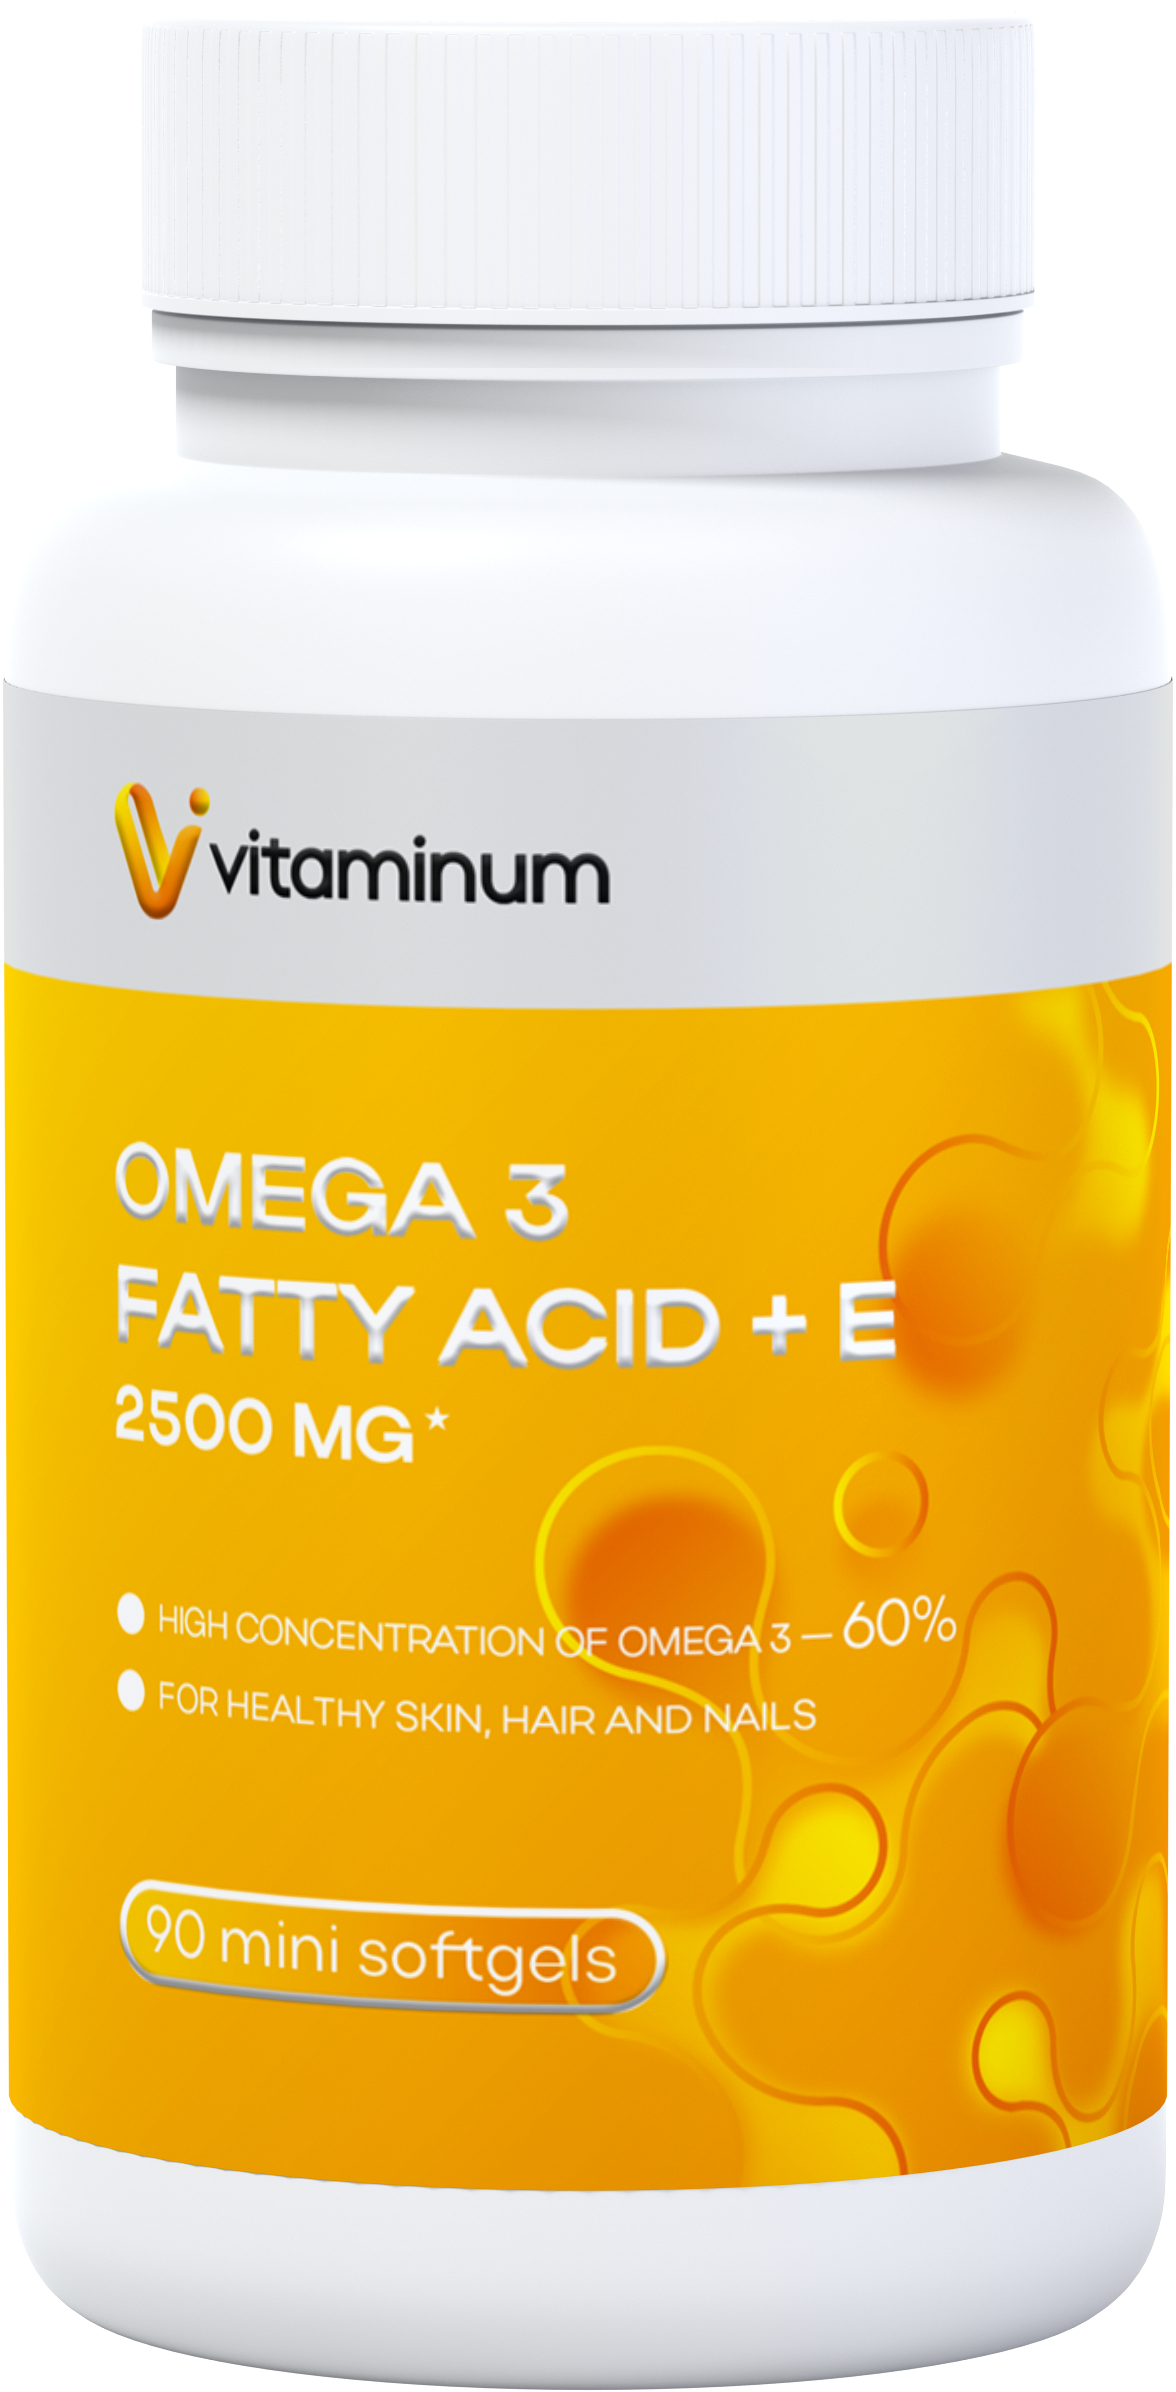  Vitaminum ОМЕГА 3 60% + витамин Е (2500 MG*) 90 капсул 700 мг  в Армянске